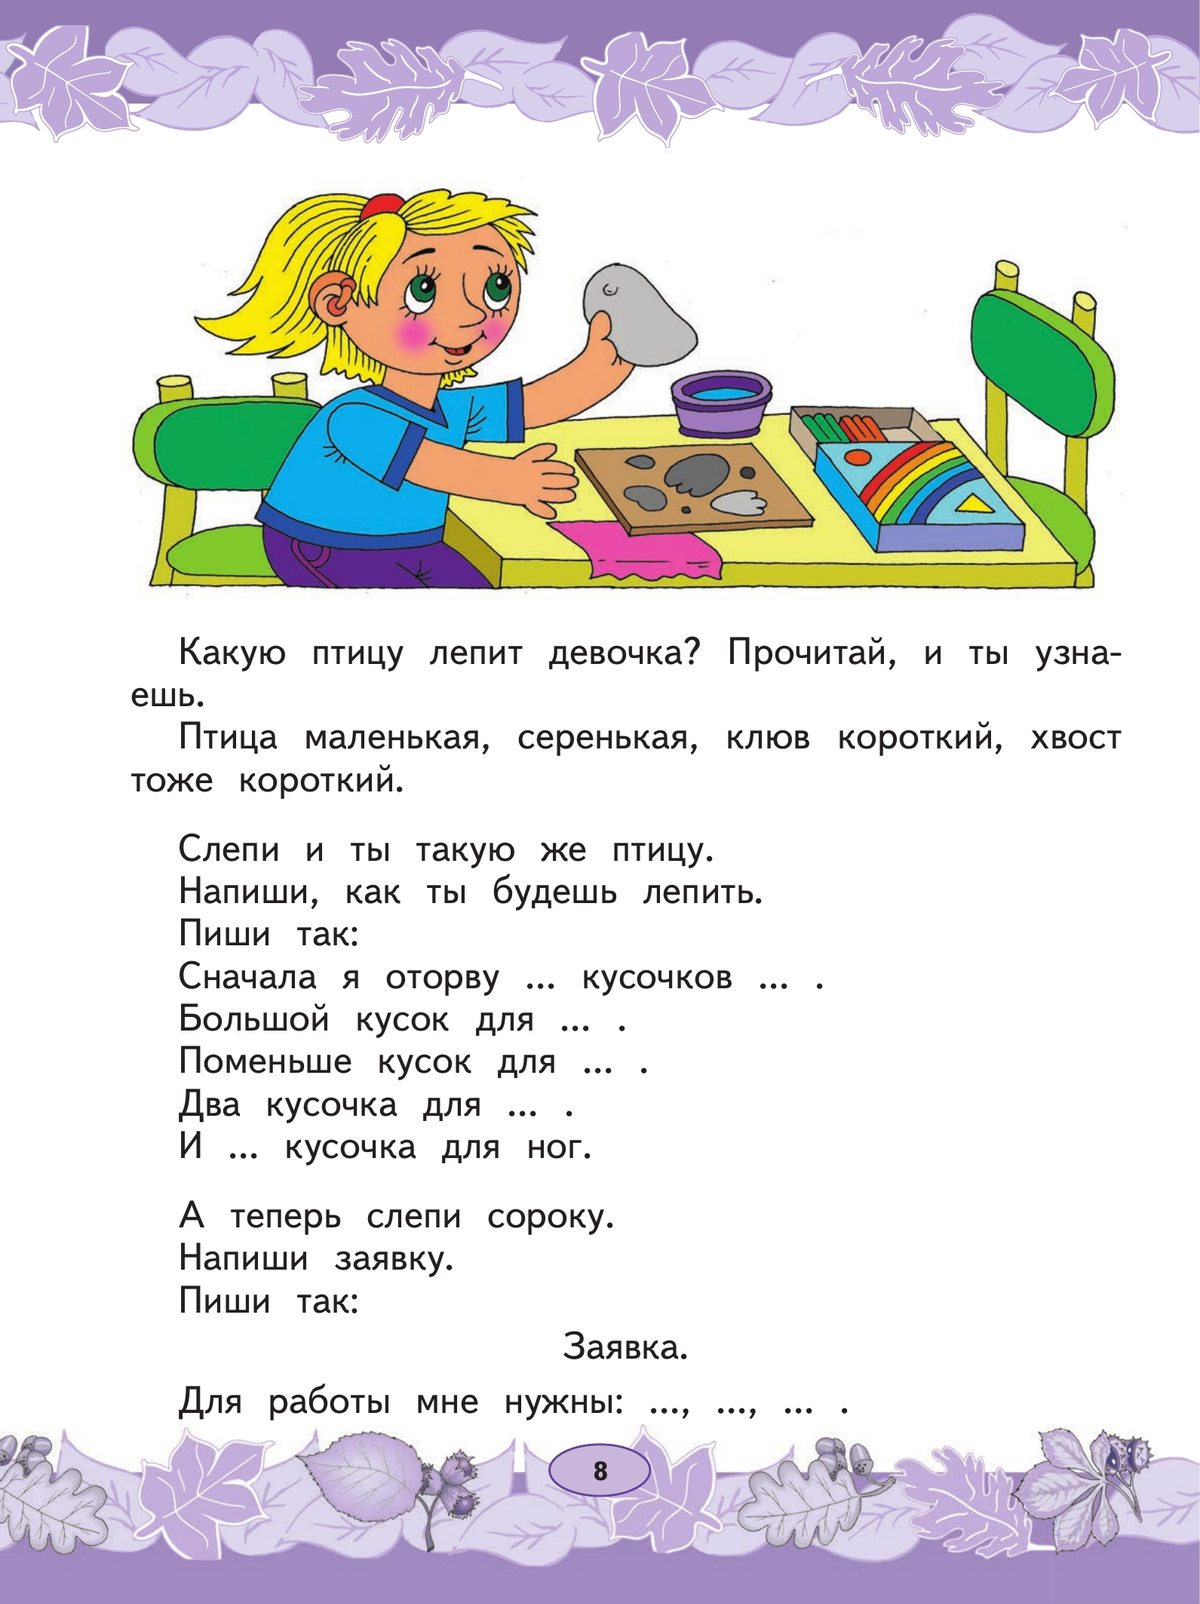 Русский язык. Развитие речи. 1 класс. Учебник. В 2 ч. Часть 2 (для глухих обучающихся) 4